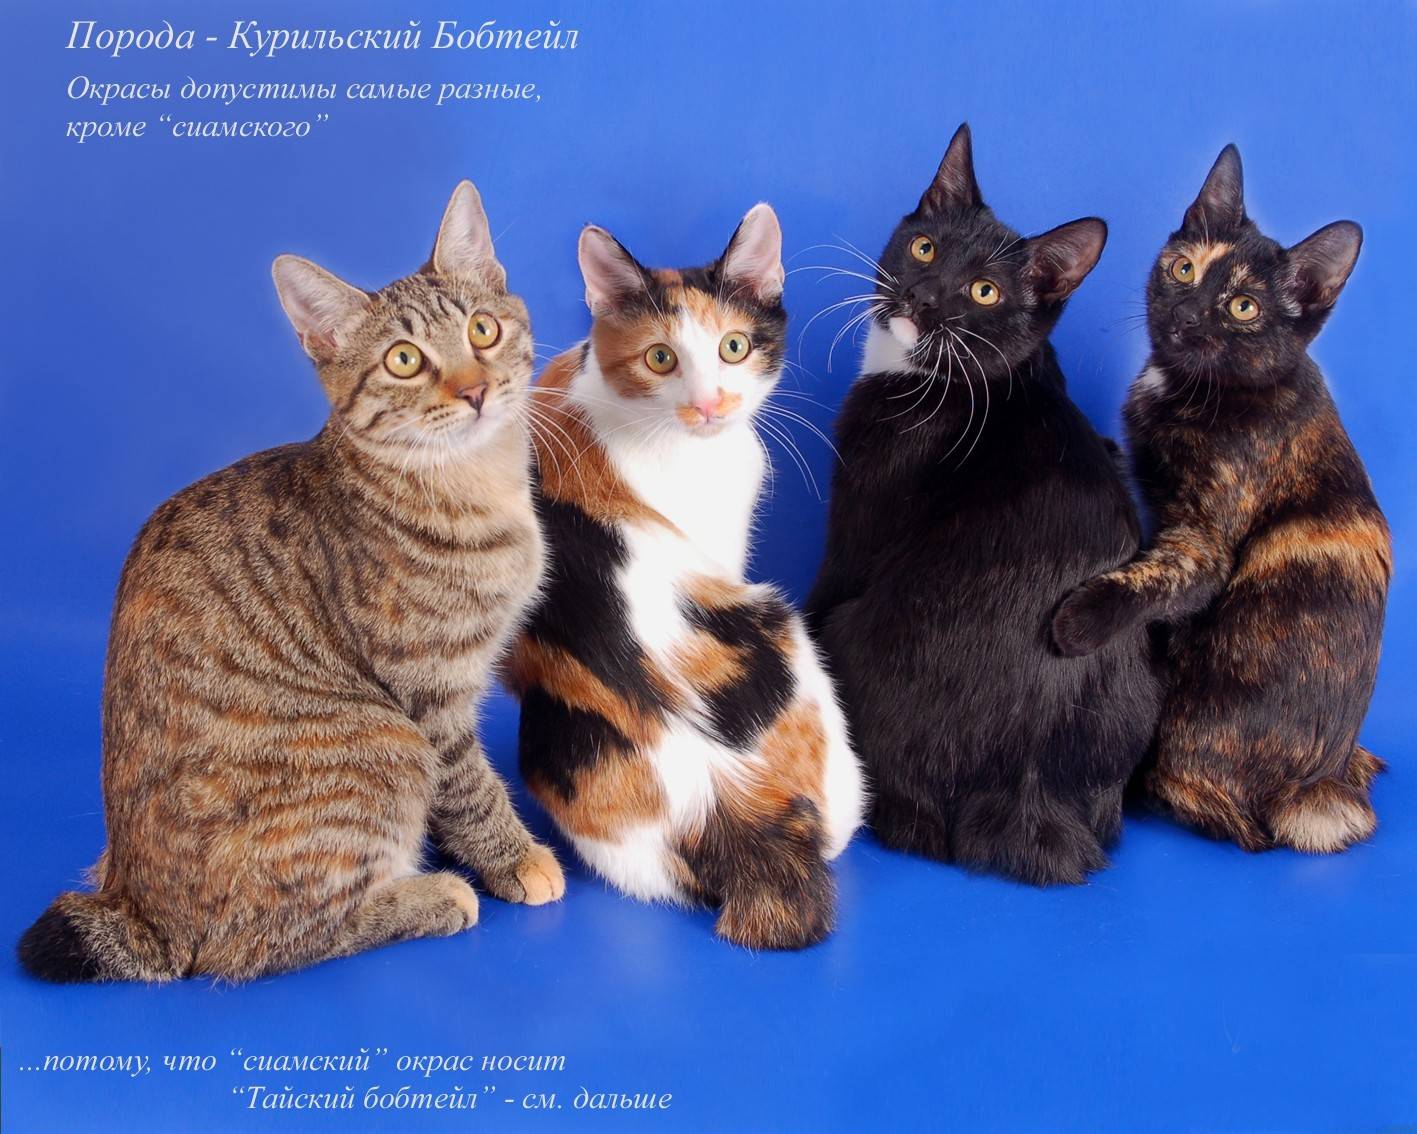 Европейская короткошерстная кошка – кельтское наследие европы и гордость современных выставок